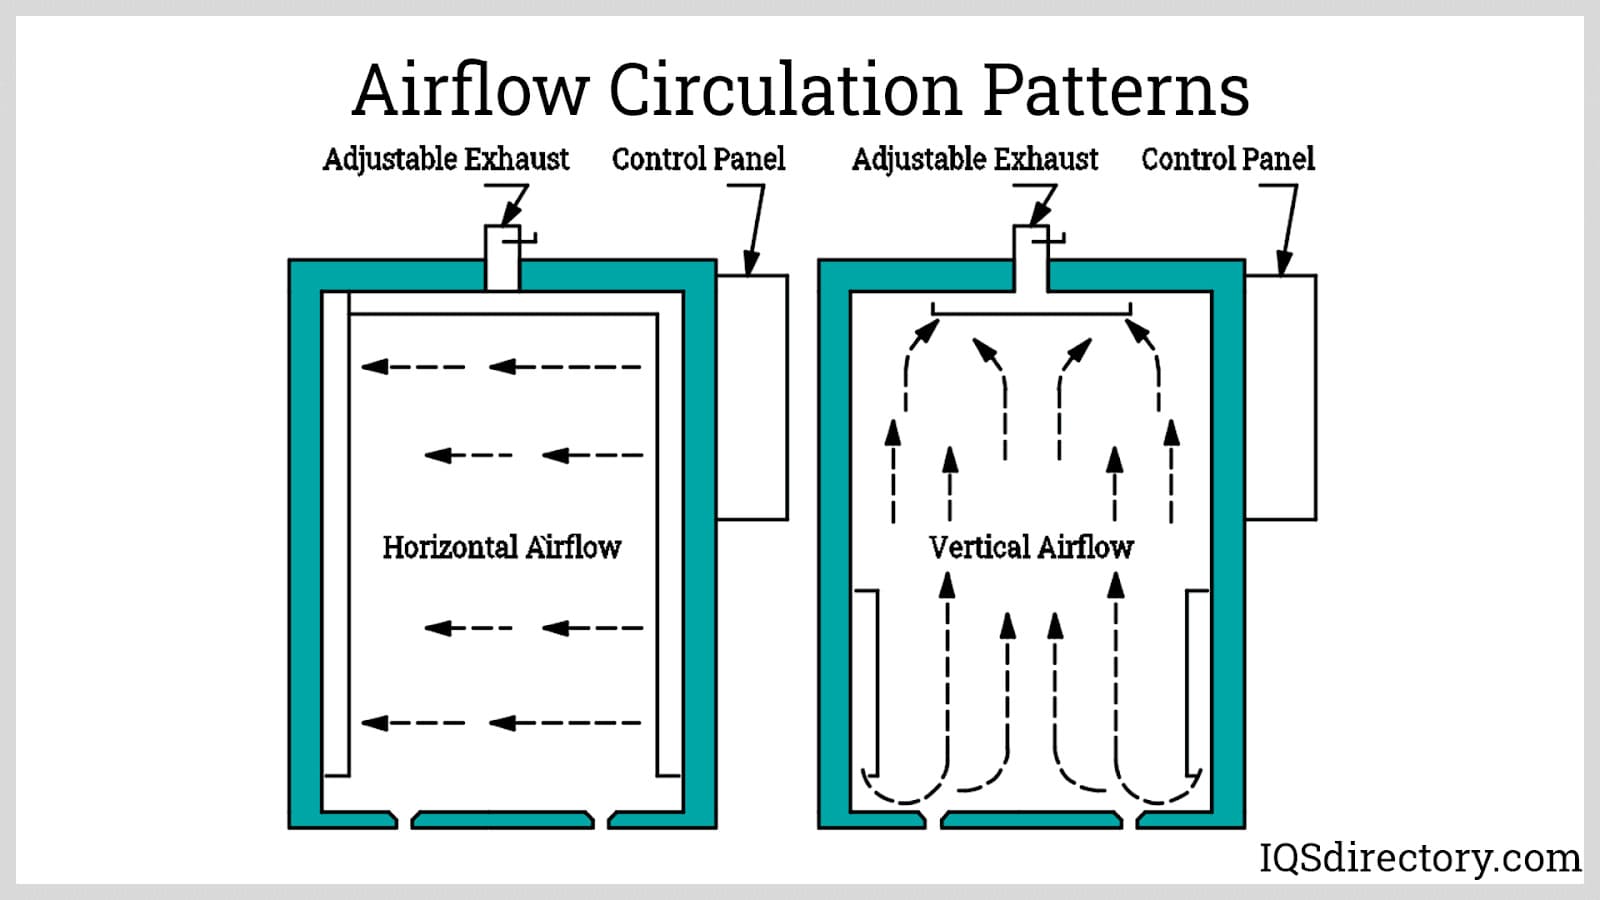 Airflow Circulation Patterns